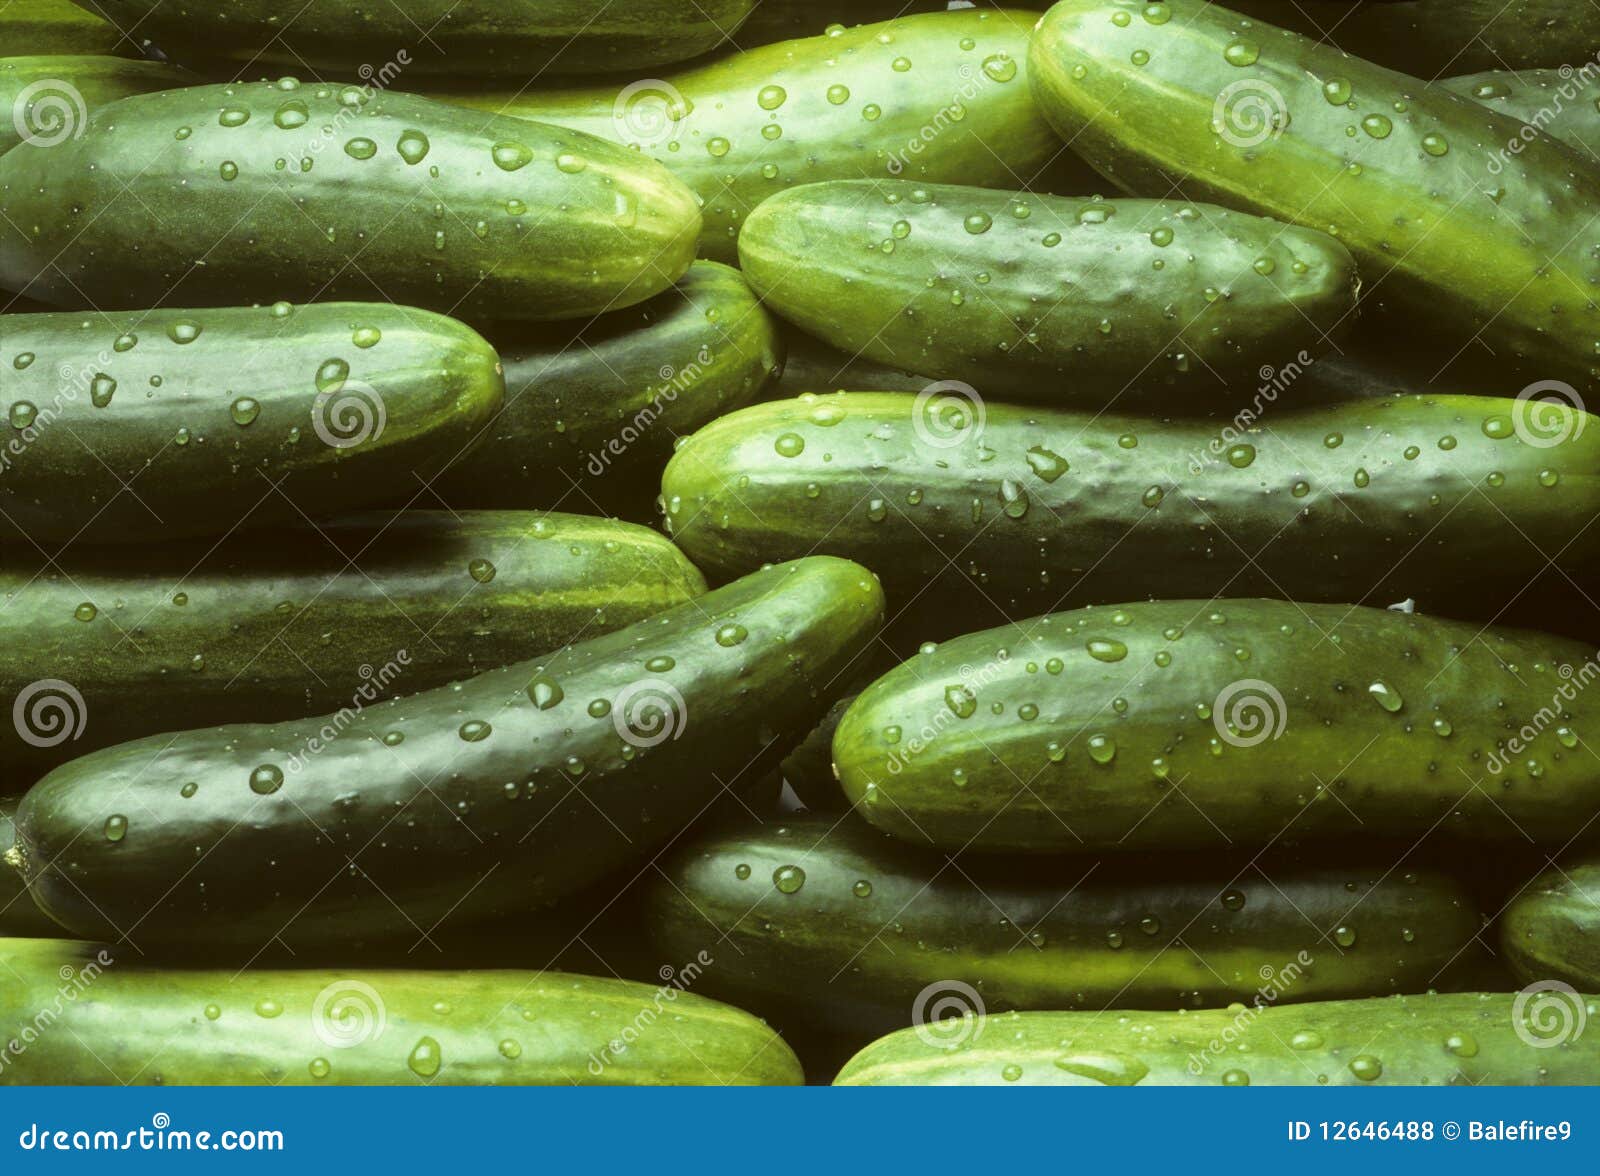 a pile of fresh cucumbers